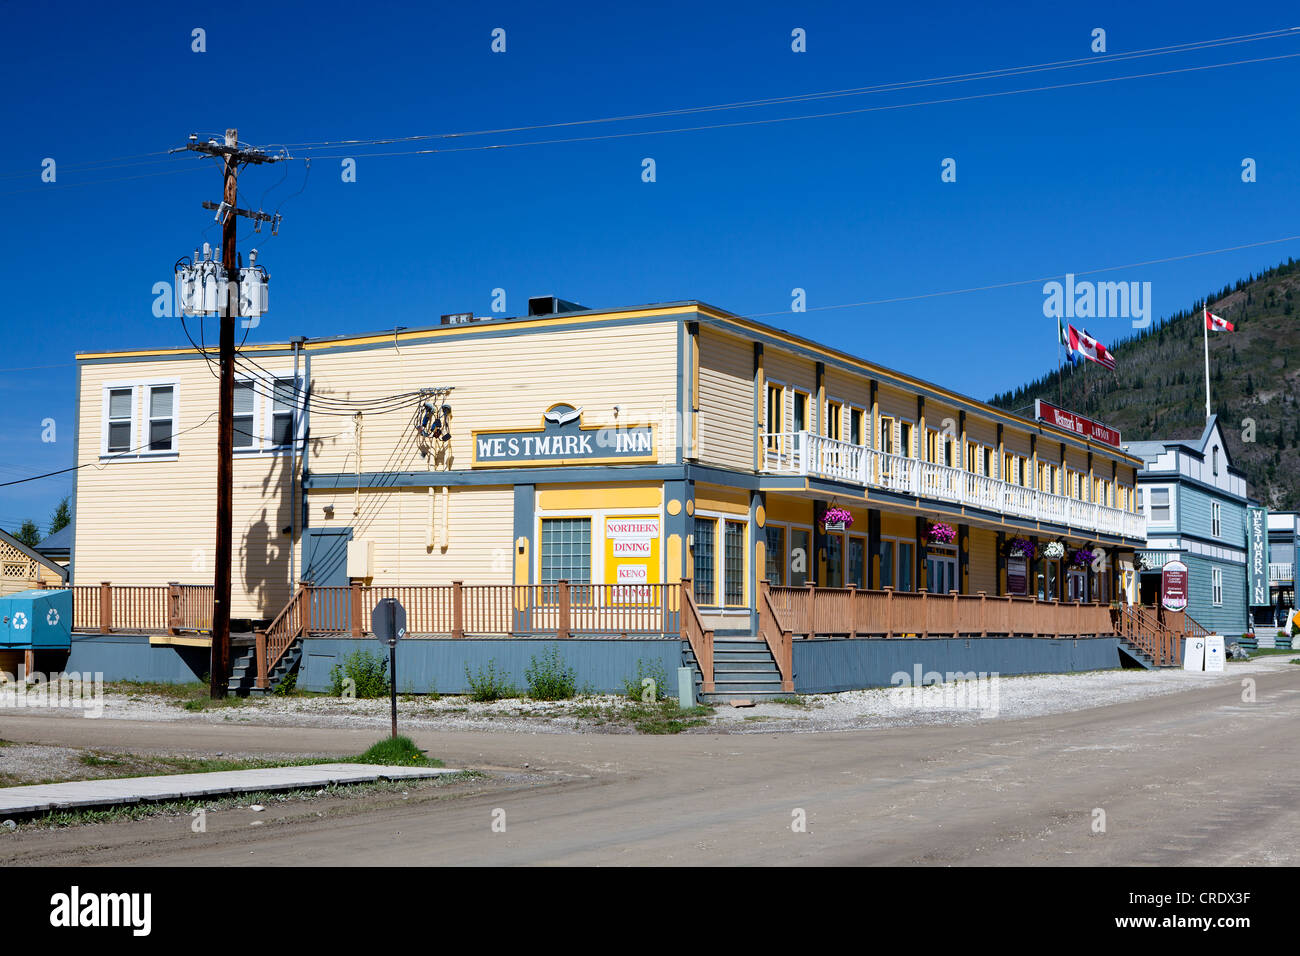 Westmark Inn Hotel, Dawson City, Canada, North America Stock Photo